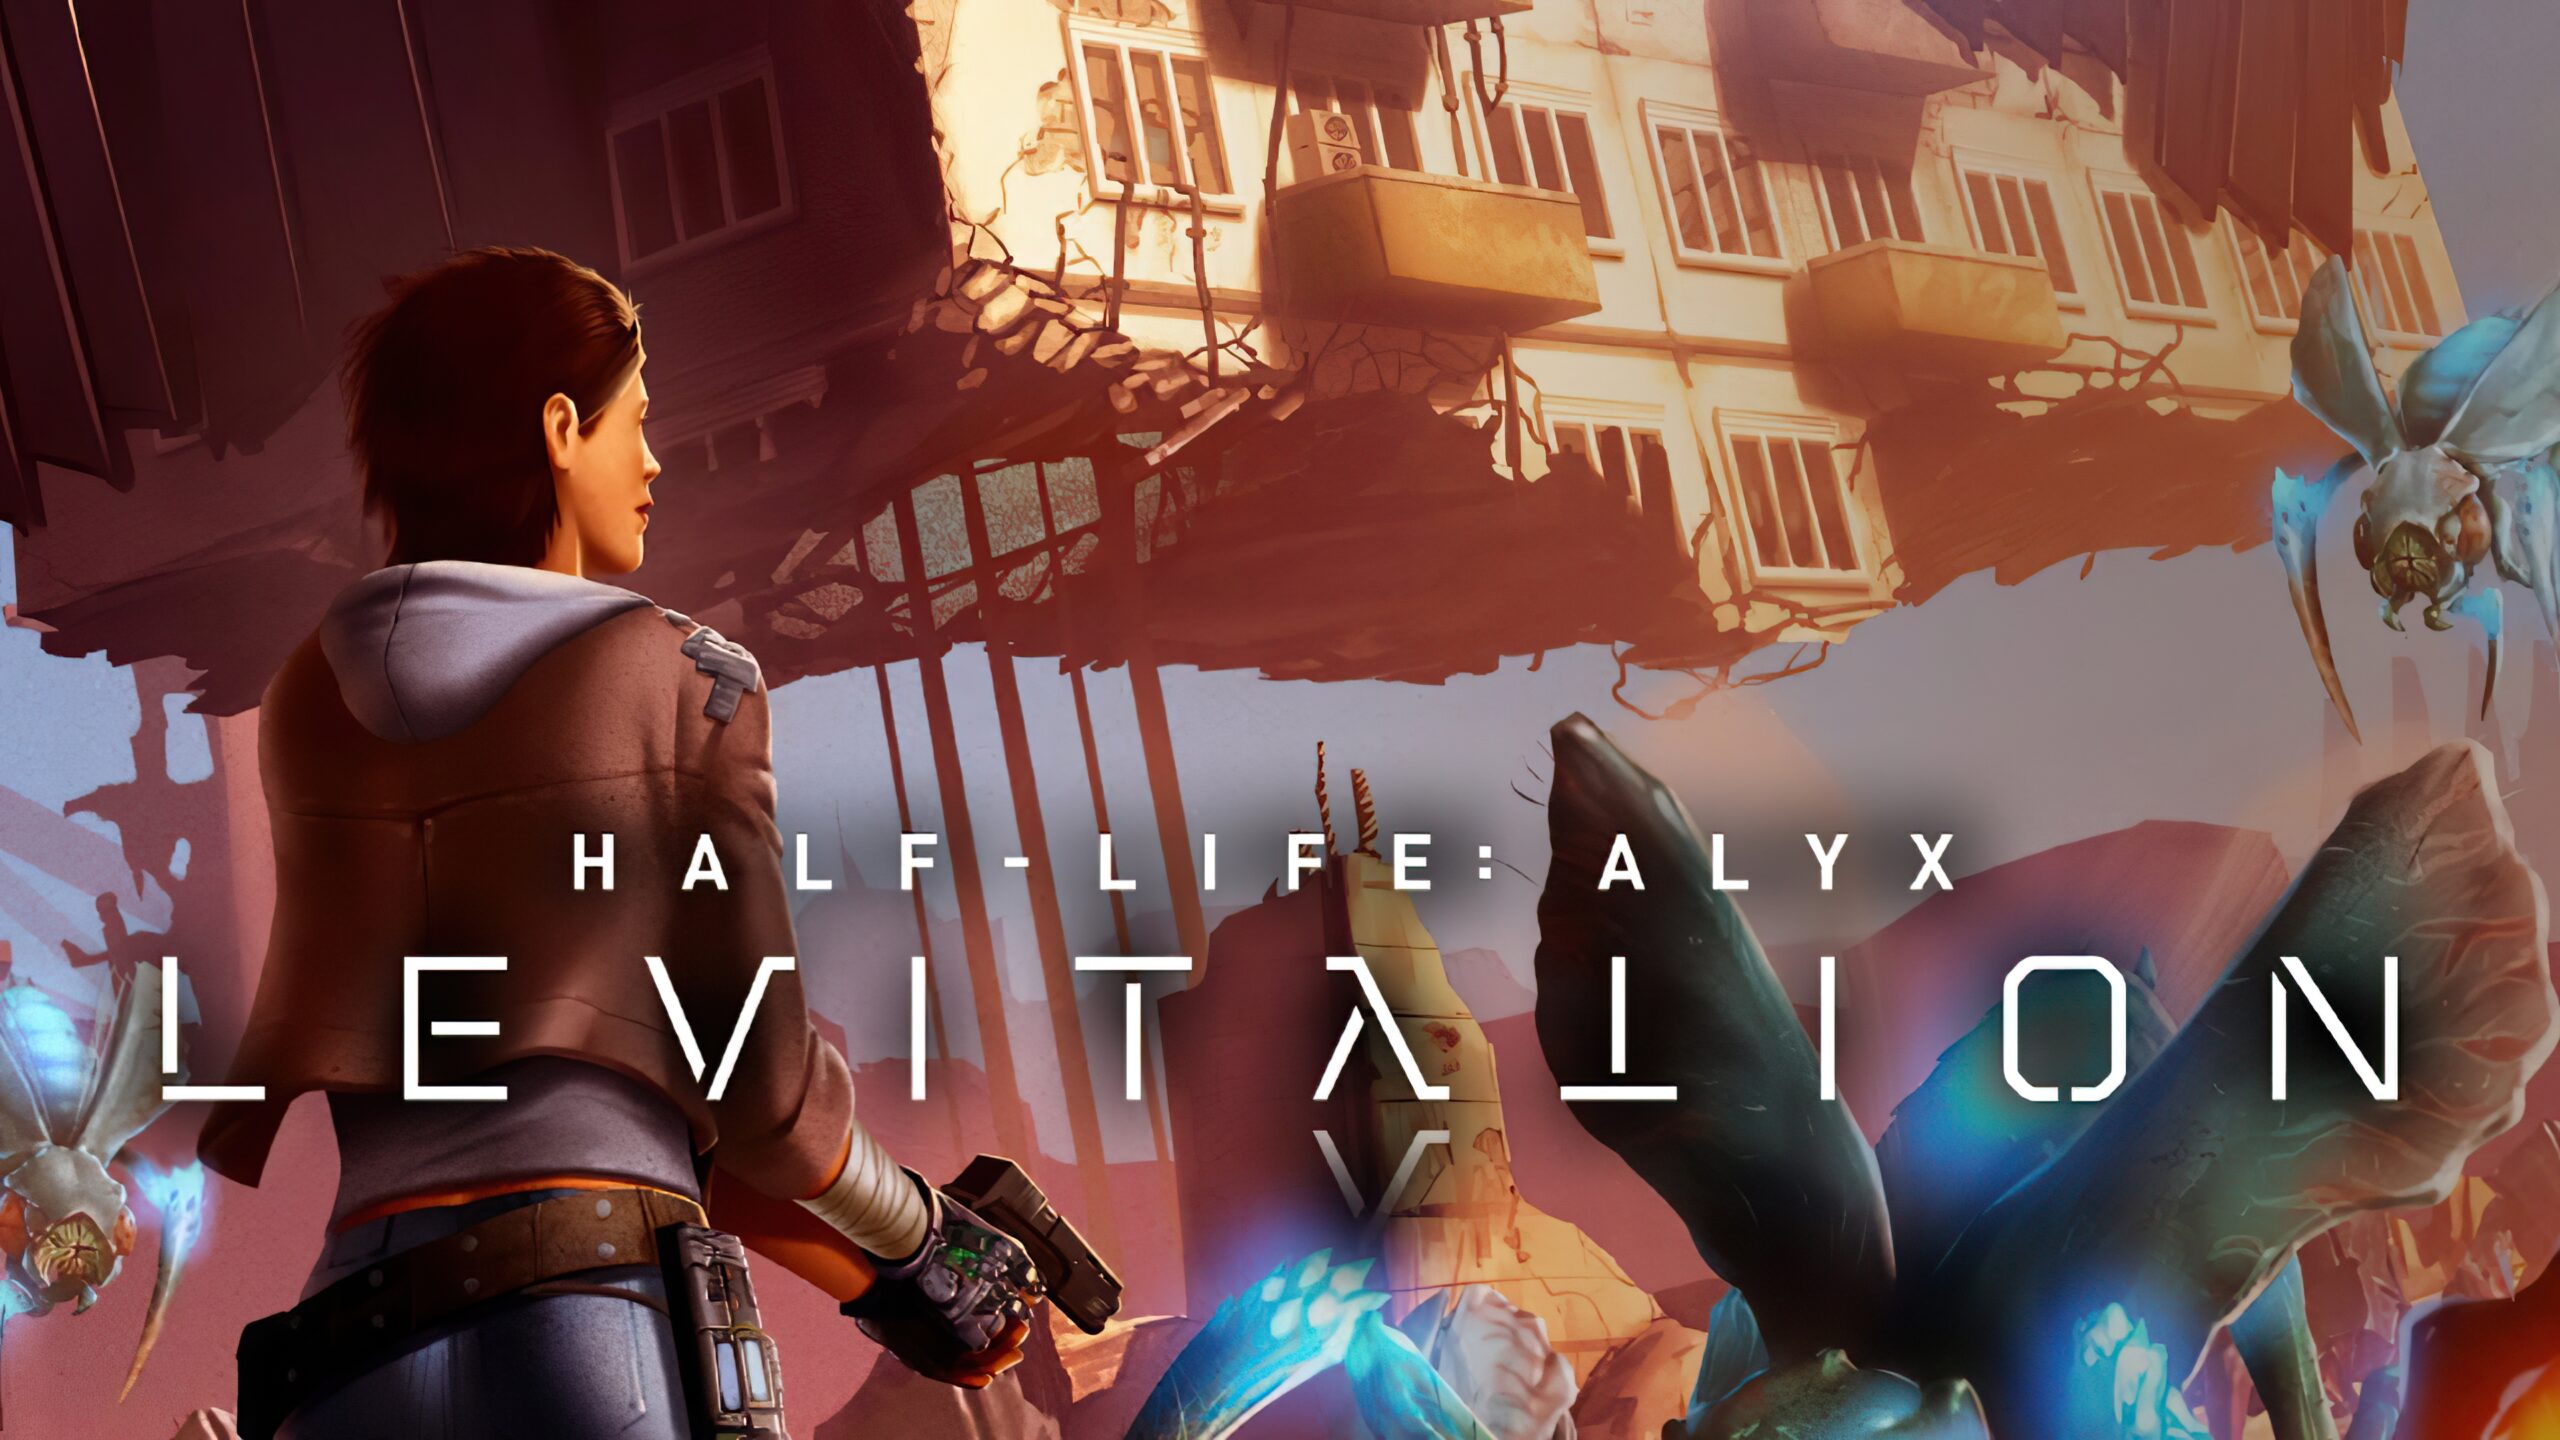 Half-Life vs Half-Life 2 vs Half-Life Alyx Graphics Comparison